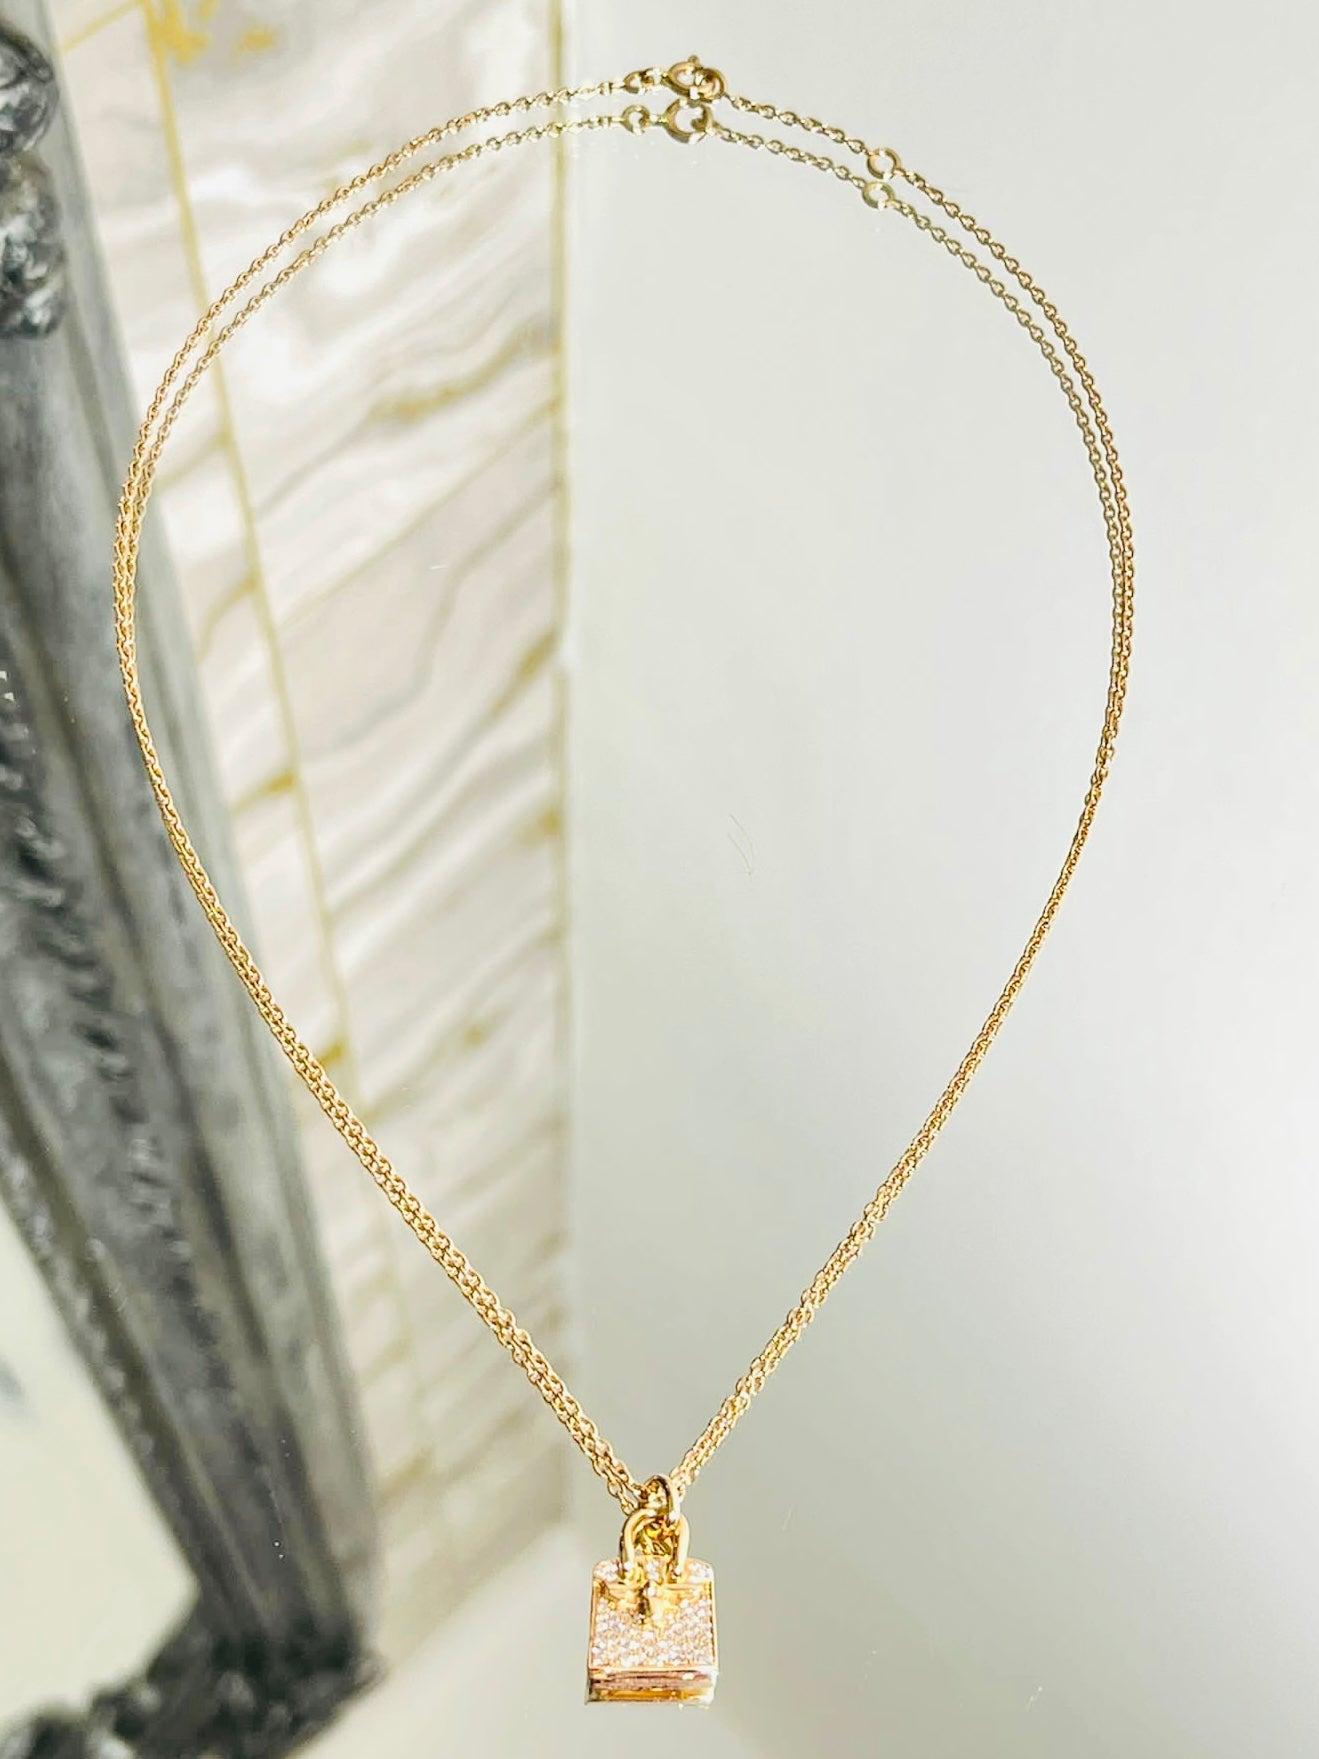 Hermes 18k Rose Gold & Diamant Birkin Amulett Anhänger Halskette

Aus der Birkin Amulette Kollektion, gefertigt aus 18 Karat Roségold, mit Diamanten besetzt.

Der Anhänger ist schwer mit gepflasterten Diamanten, die insgesamt etwa 0,22 Karat